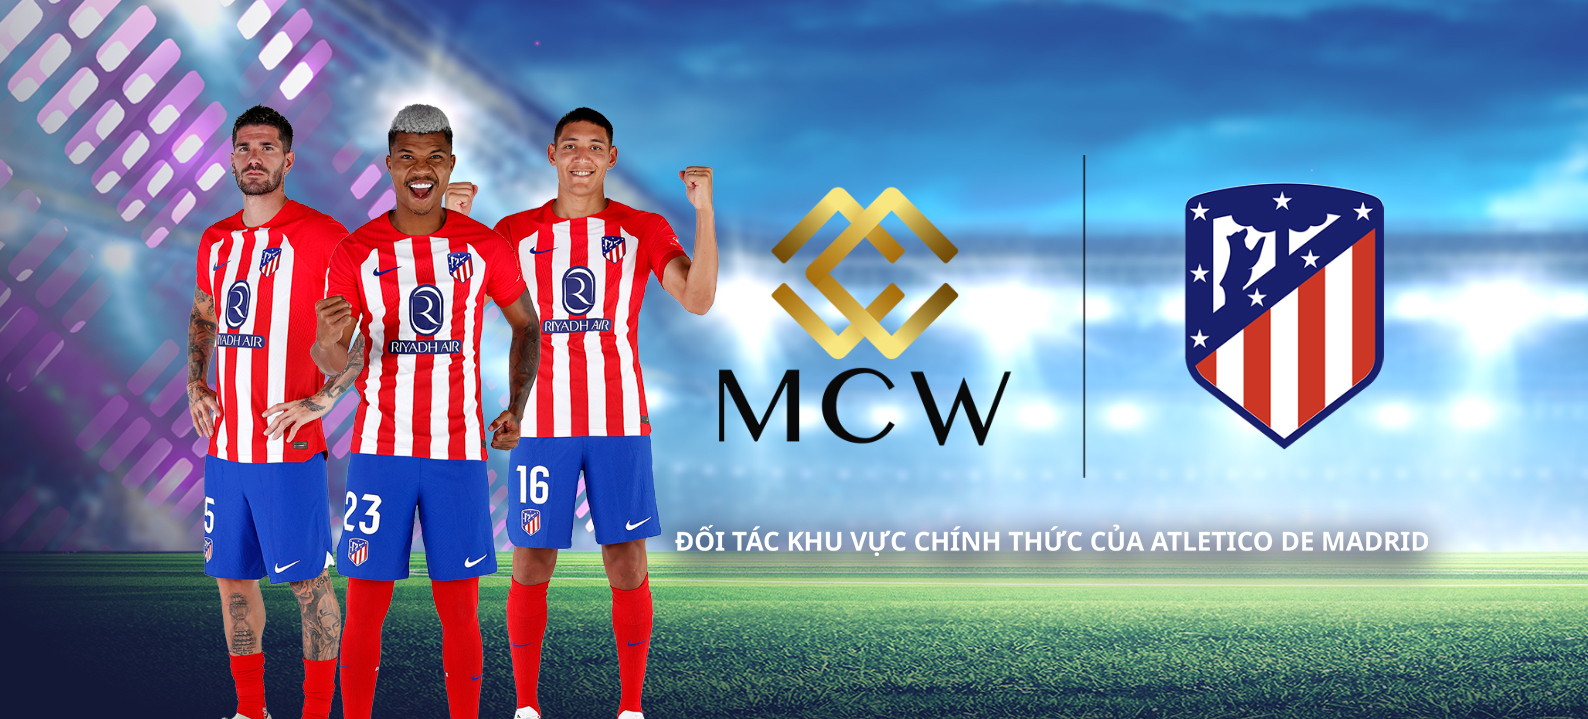 Atlético de Madrid công bố Mega Casino World (MCW) là đốI tác khu vực chính thức